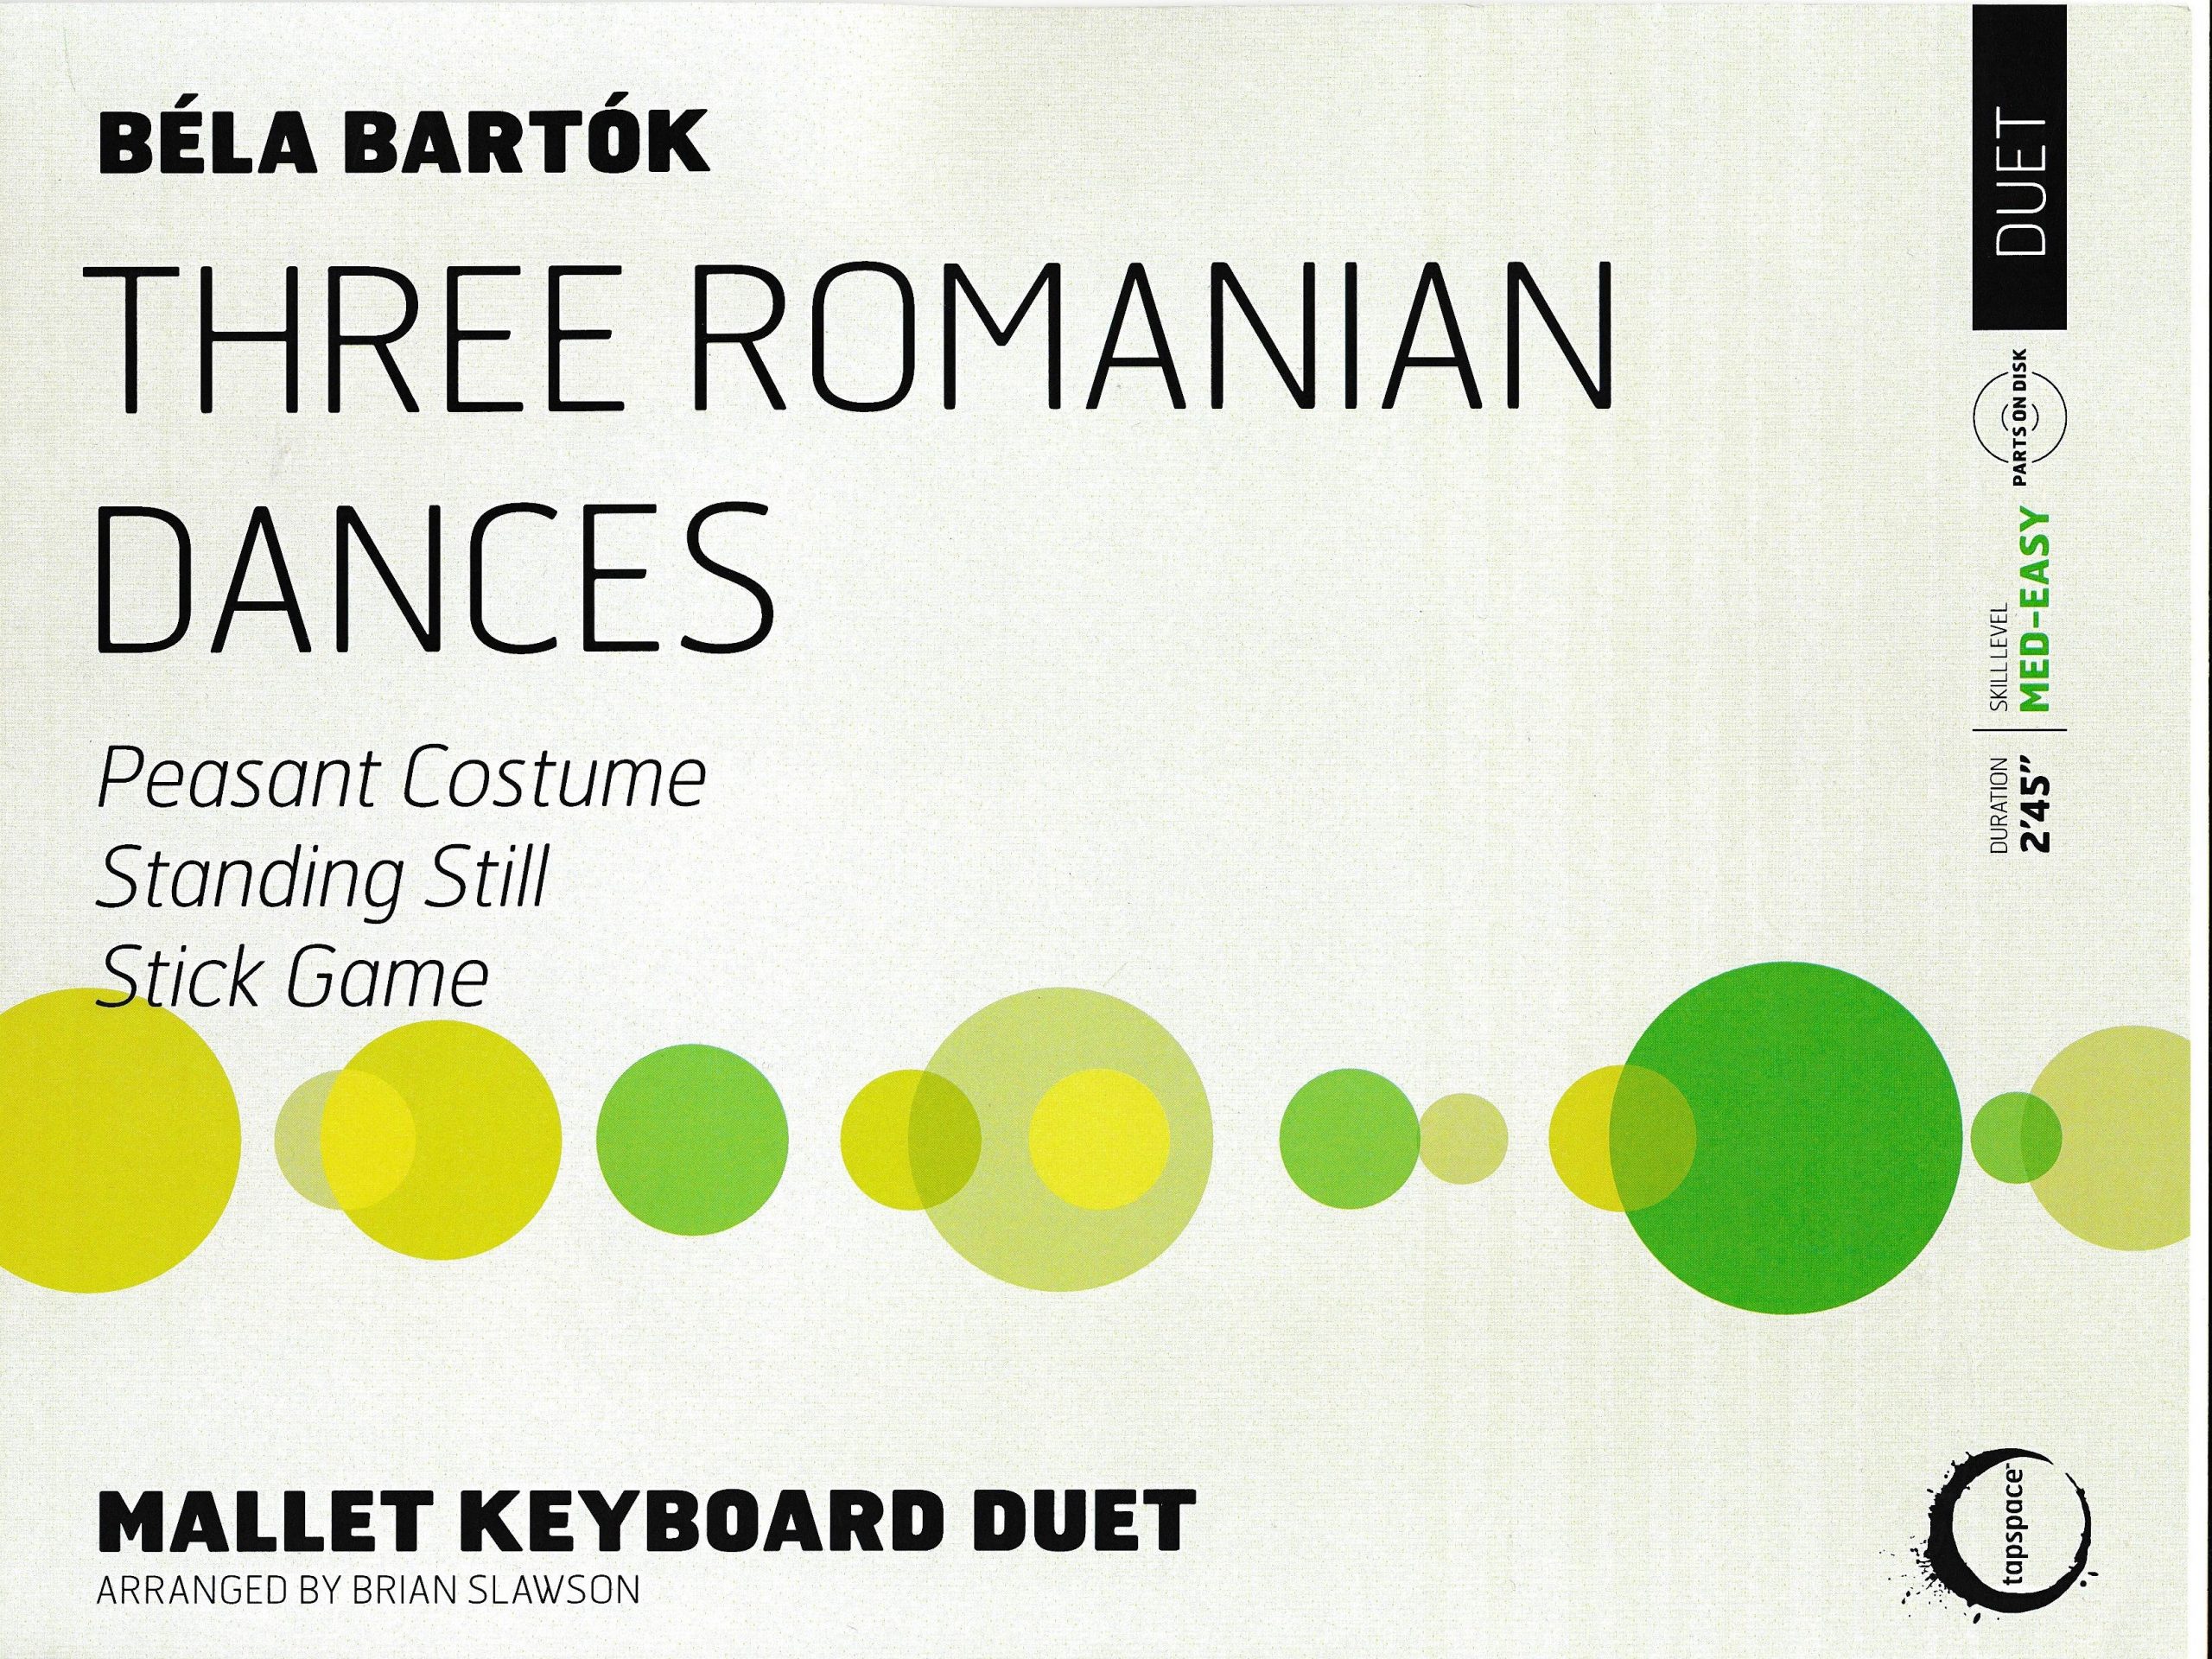 Three Romanian Dances by Bartok arr. Brian Slawson